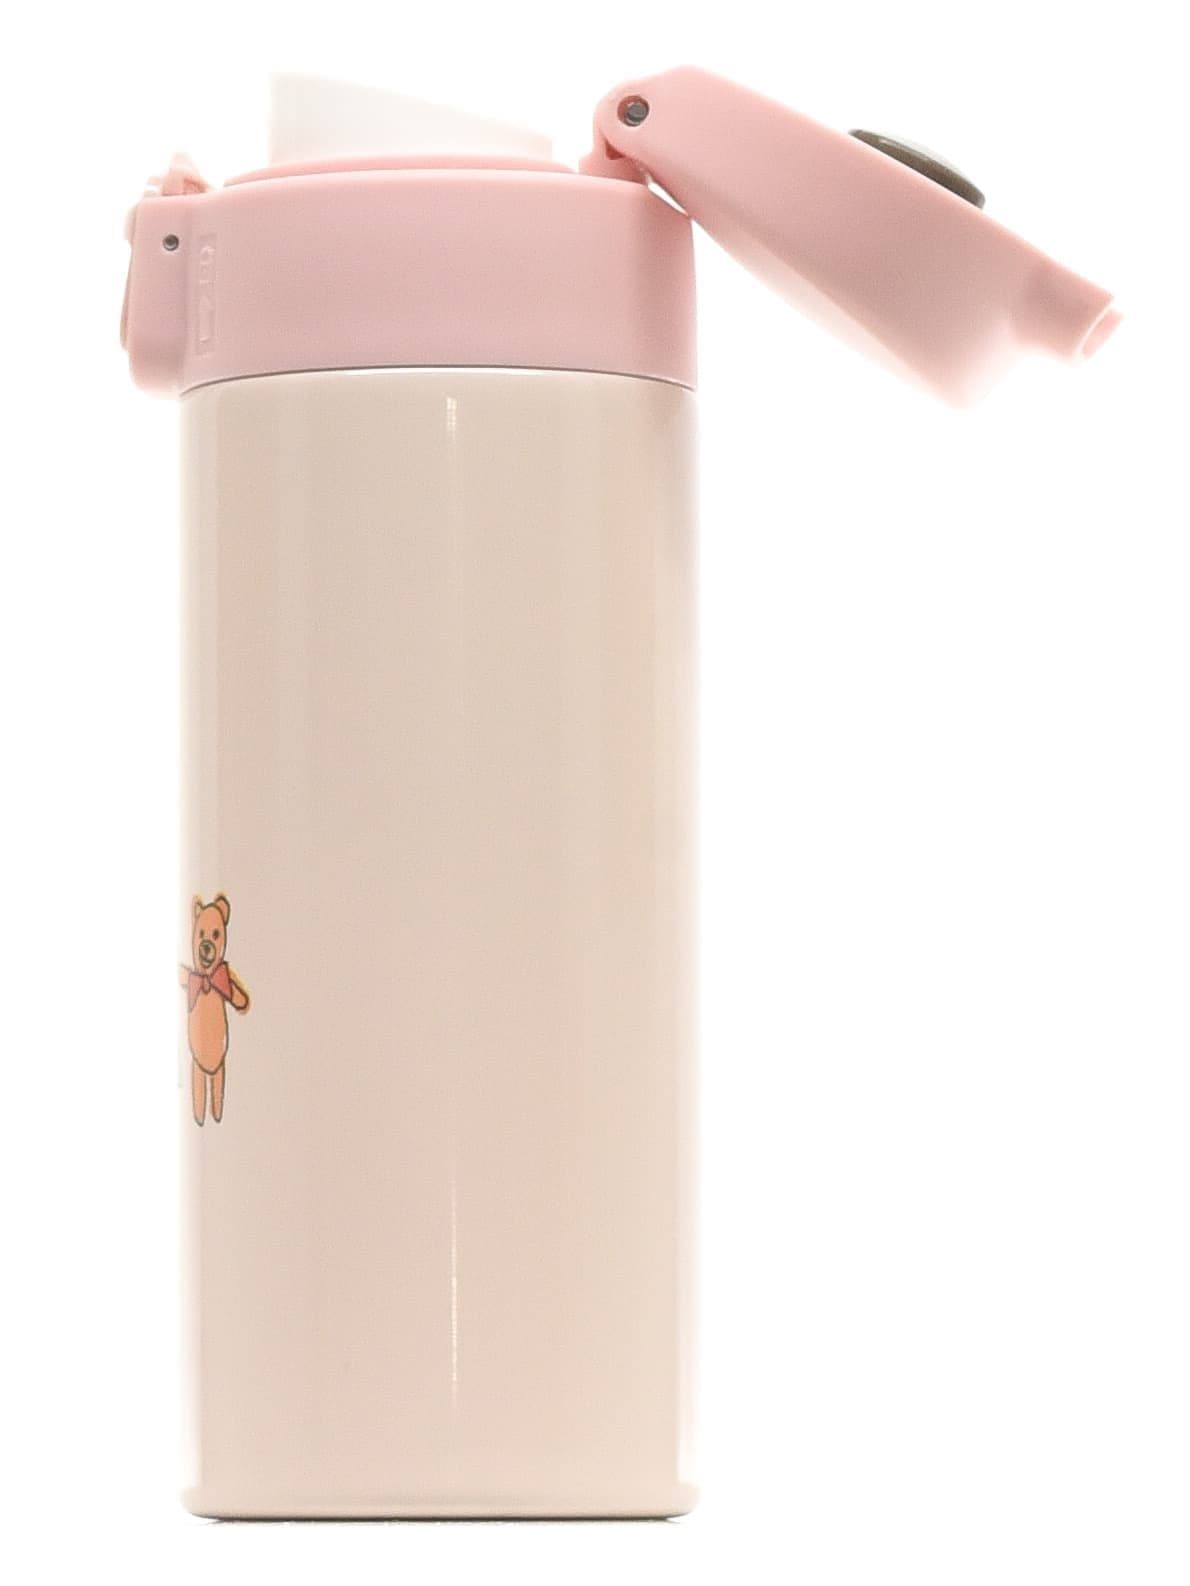 Детская бутылочка для воды Diller 8955 350 ml (Розовый) фото